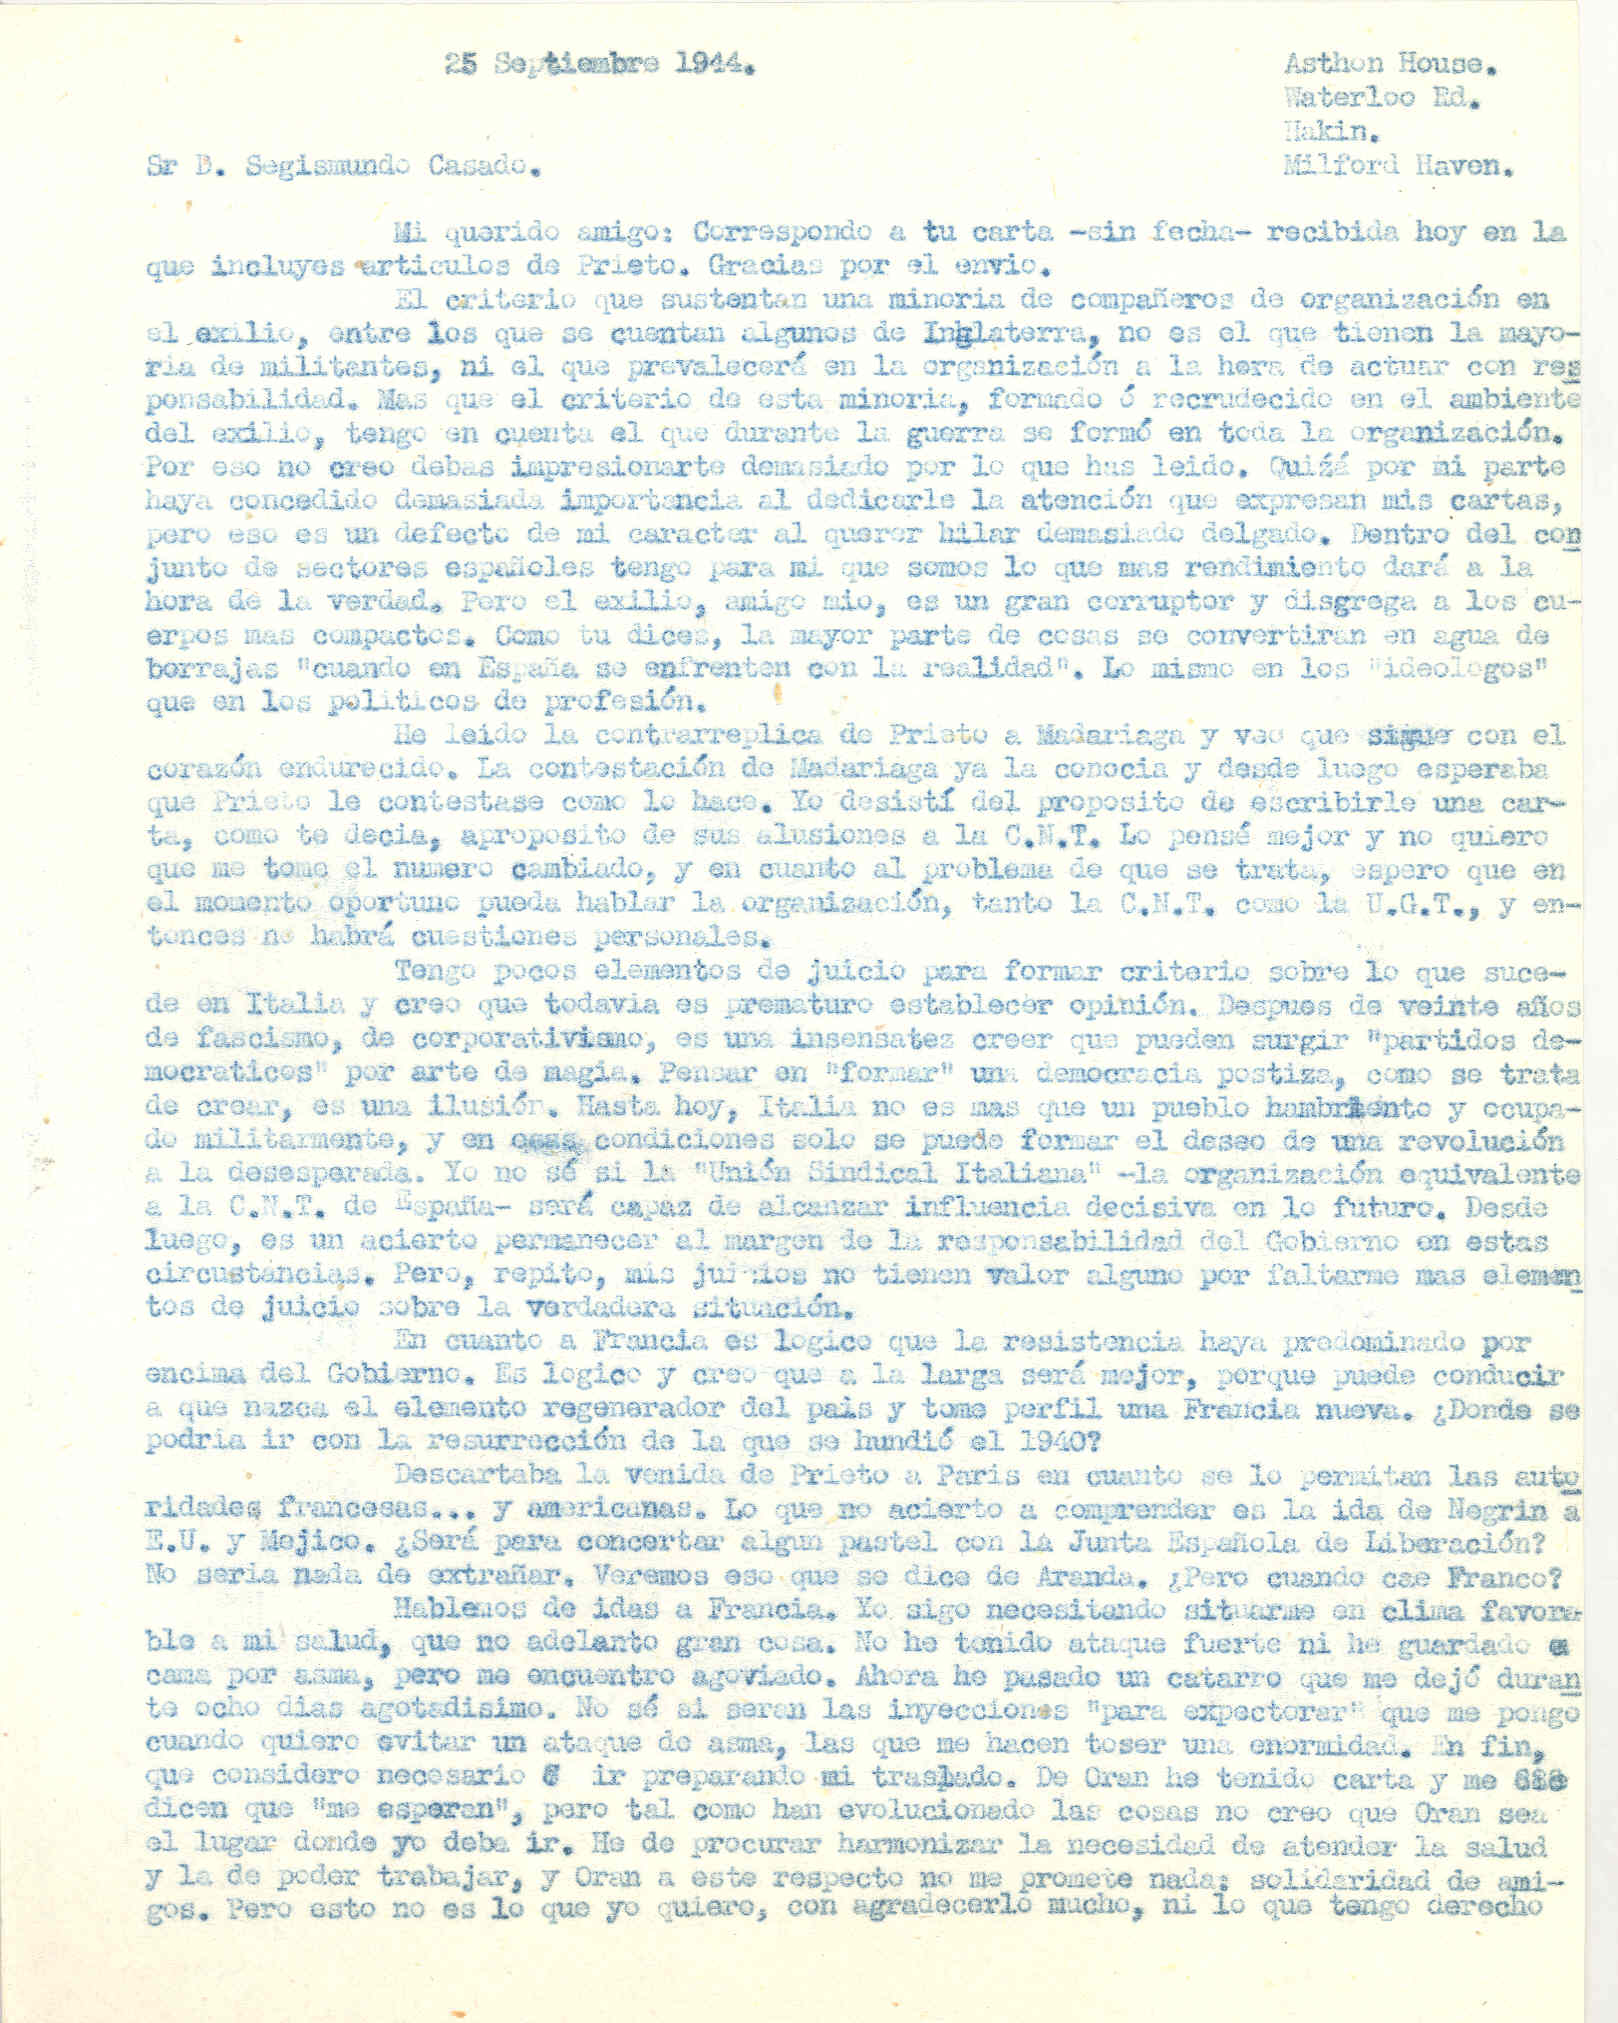 Carta a Segismundo Casado hablando de la situación de Italia y Francia  y la duración de la guerra en Europa; también de la ida de Negrín a EEUU y México.